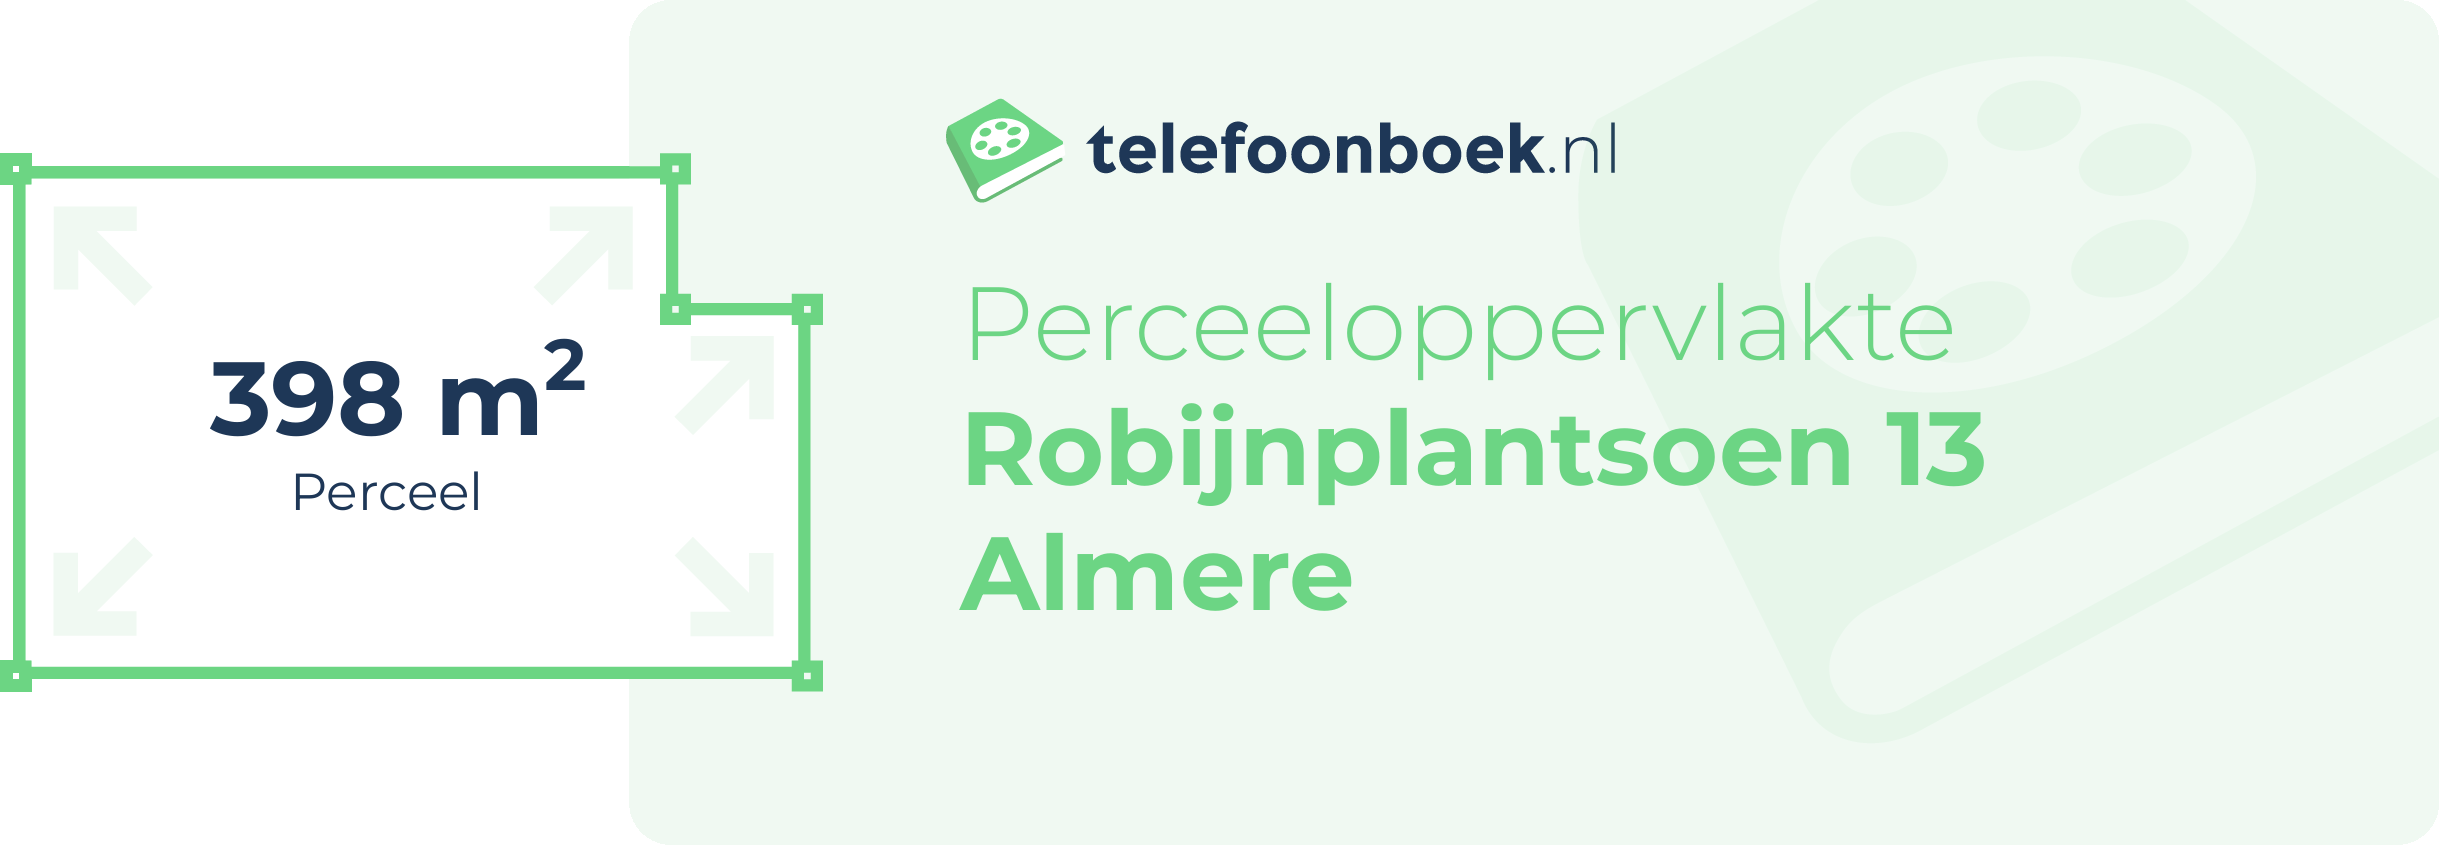 Perceeloppervlakte Robijnplantsoen 13 Almere